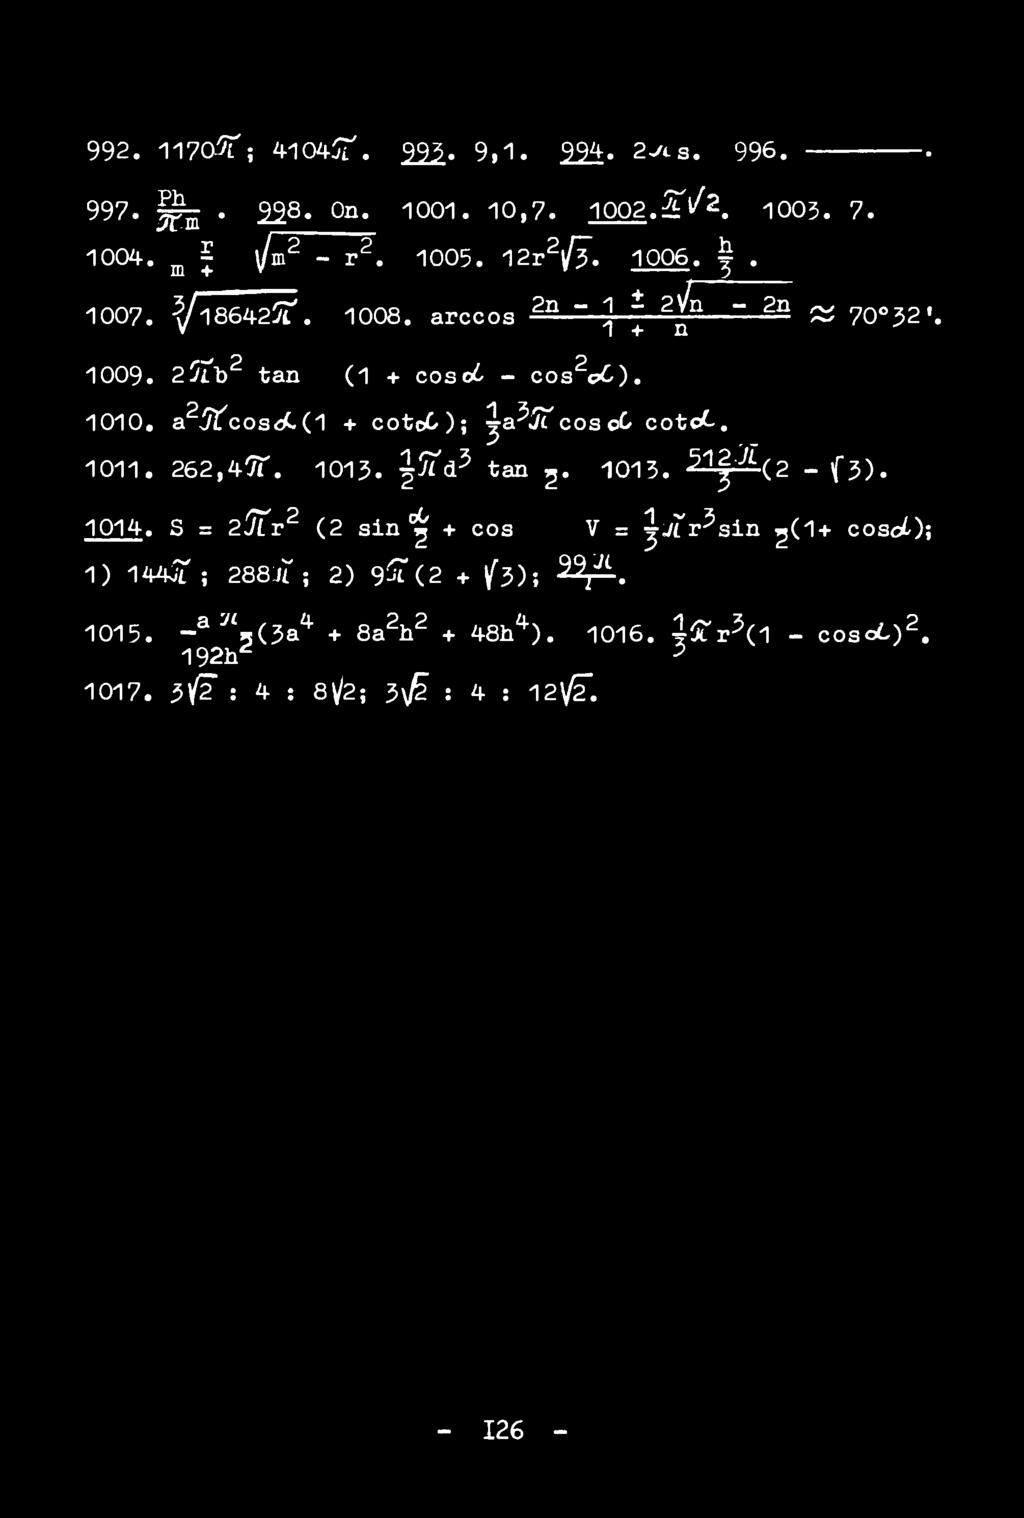 1014. S = 2^Tr2 (2 sin ^ + cos V = ^vtr^sin ^(1+ cosoq; 1) 144JT ; 288JT ; 2) 9^ (2 + /3)